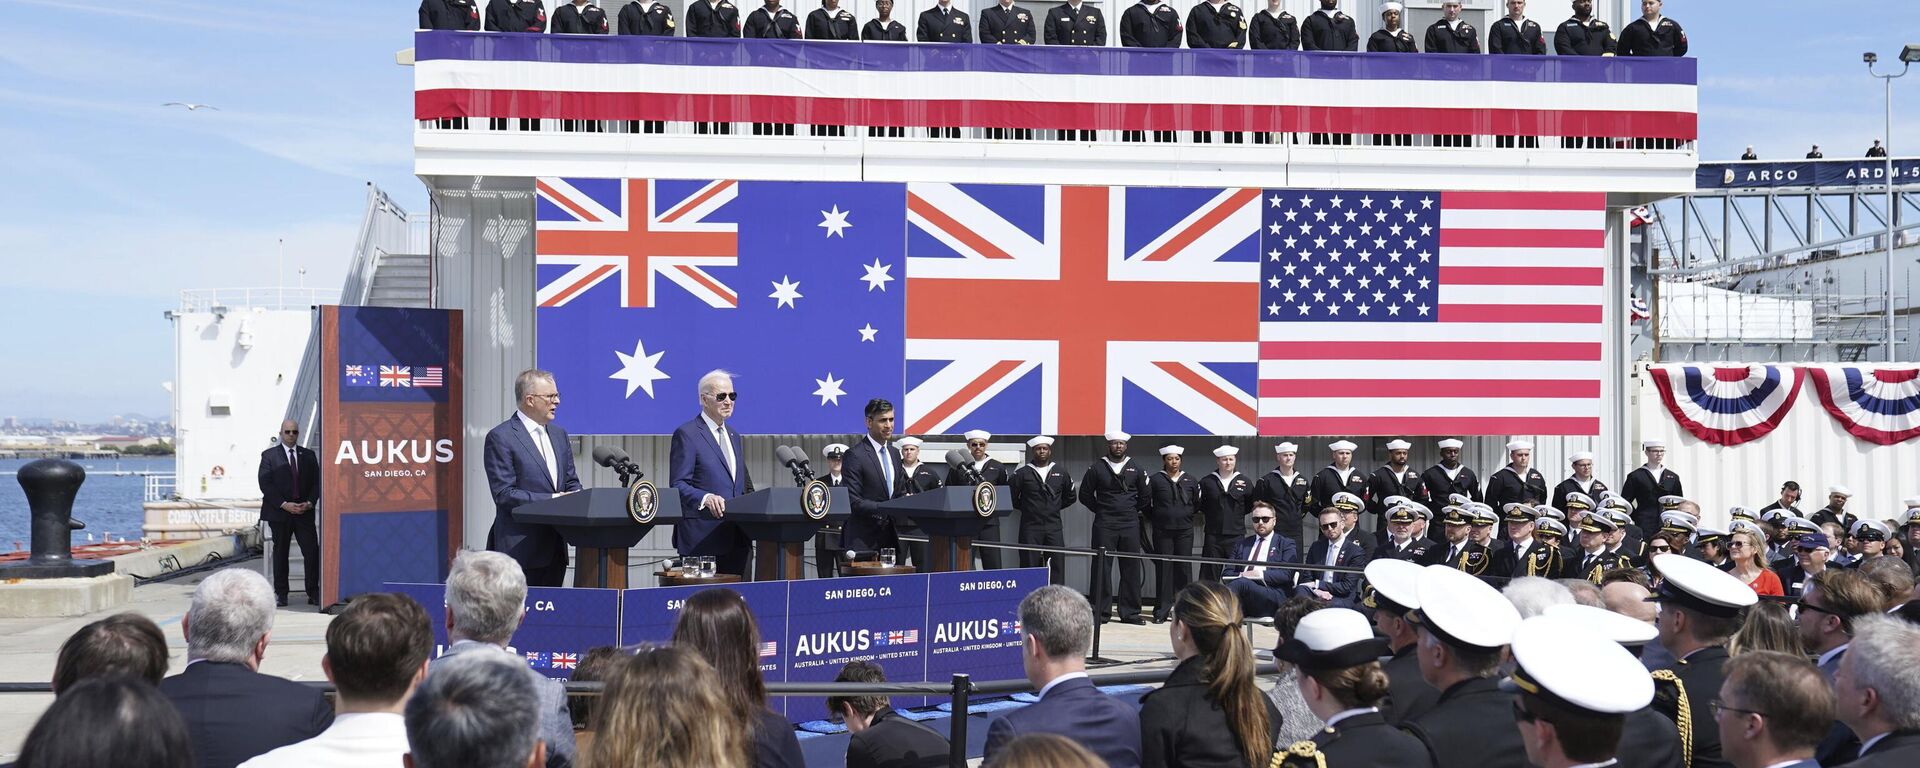 O primeiro-ministro britânico Rishi Sunak, à direita, o presidente norte-americano Joe Biden e o primeiro-ministro da Austrália Anthony Albanese, à esquerda, reunidos na base naval de Point Loma em San Diego, EUA, em 13 de março de 2023, no quadro do AUKUS, o pacto trilateral de segurança entre a Austrália, o Reino Unido e os EUA. - Sputnik Brasil, 1920, 14.03.2023